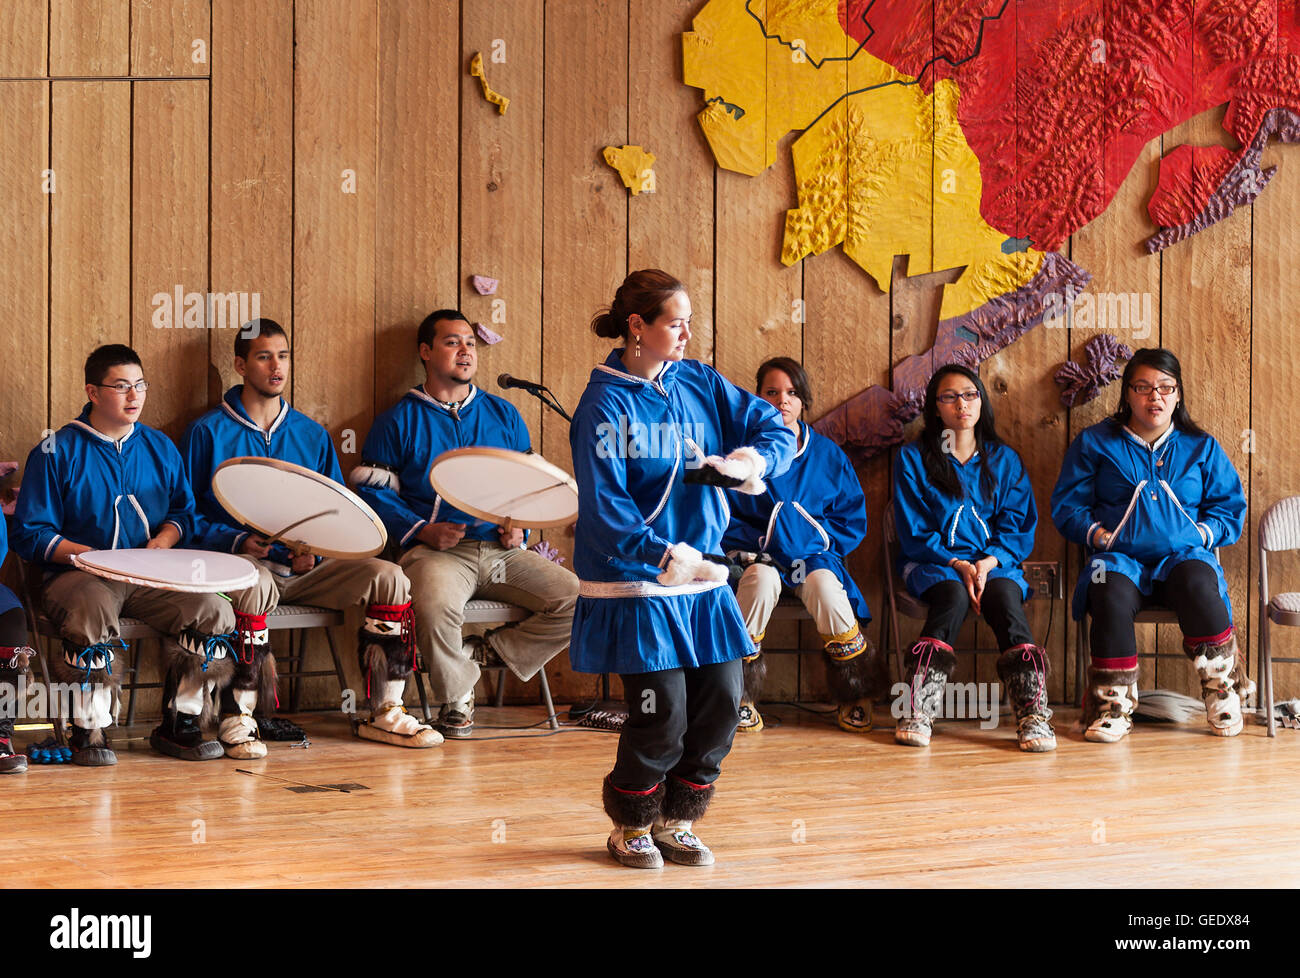 La juventud de Alaska Nativo demuestra la danza tradicional de su cultura nativa en el Centro del Patrimonio de Alaska, Anchorage, Alaska. Foto de stock